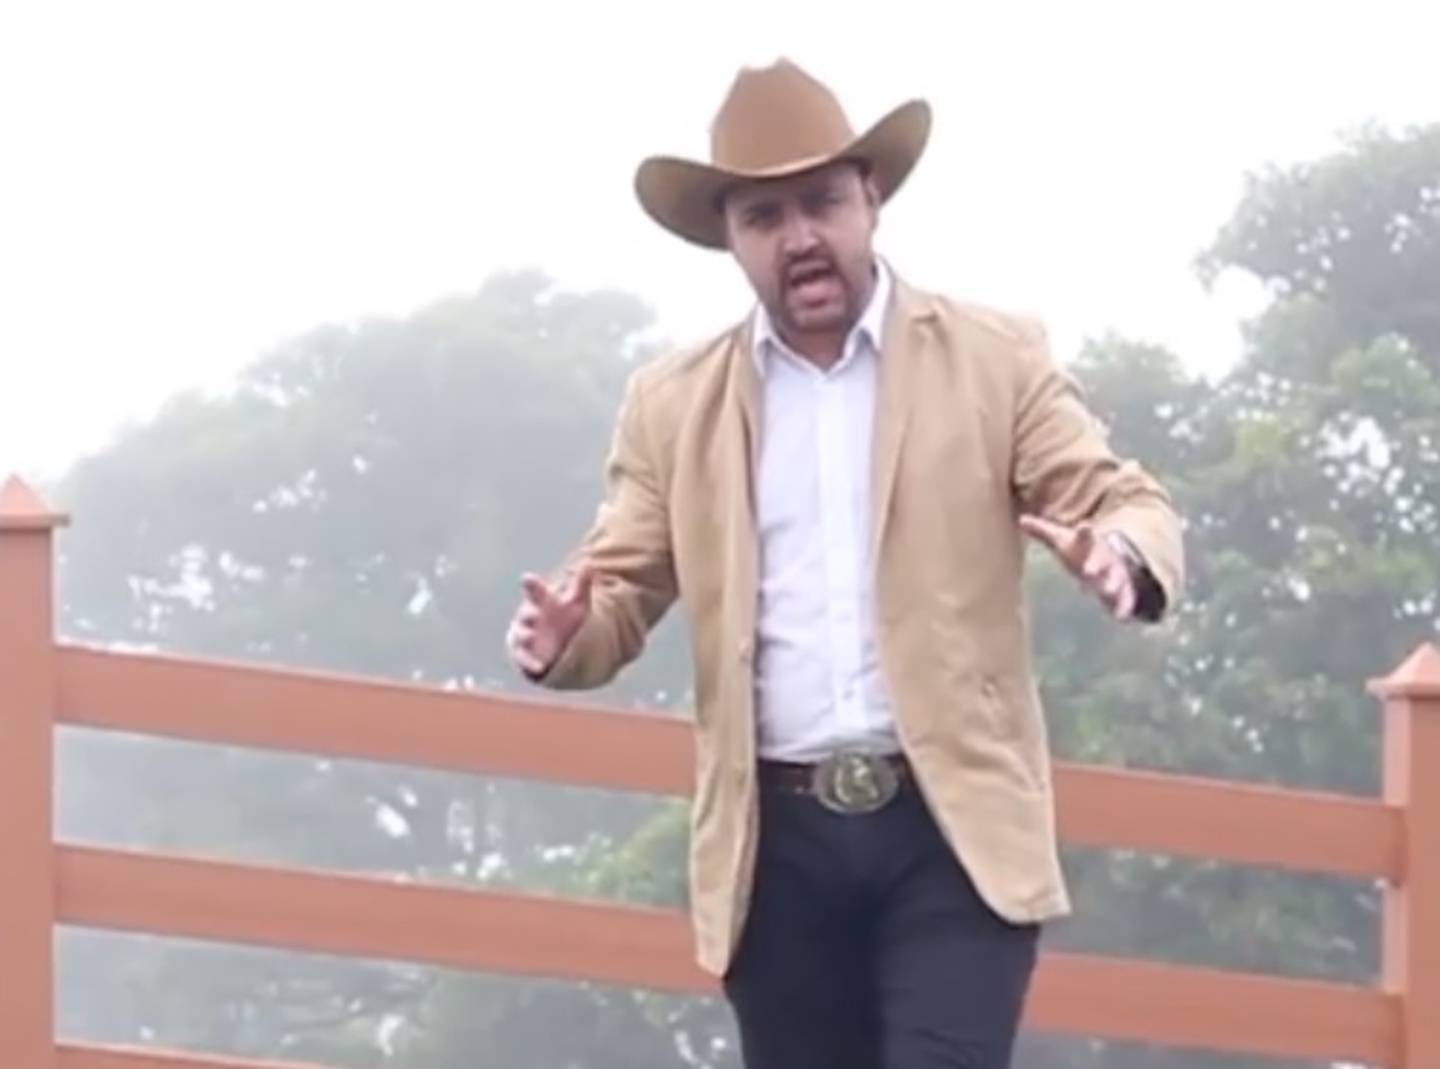 Antonio Chacón, cantante tico versiona Tu Cárcel en ranchero